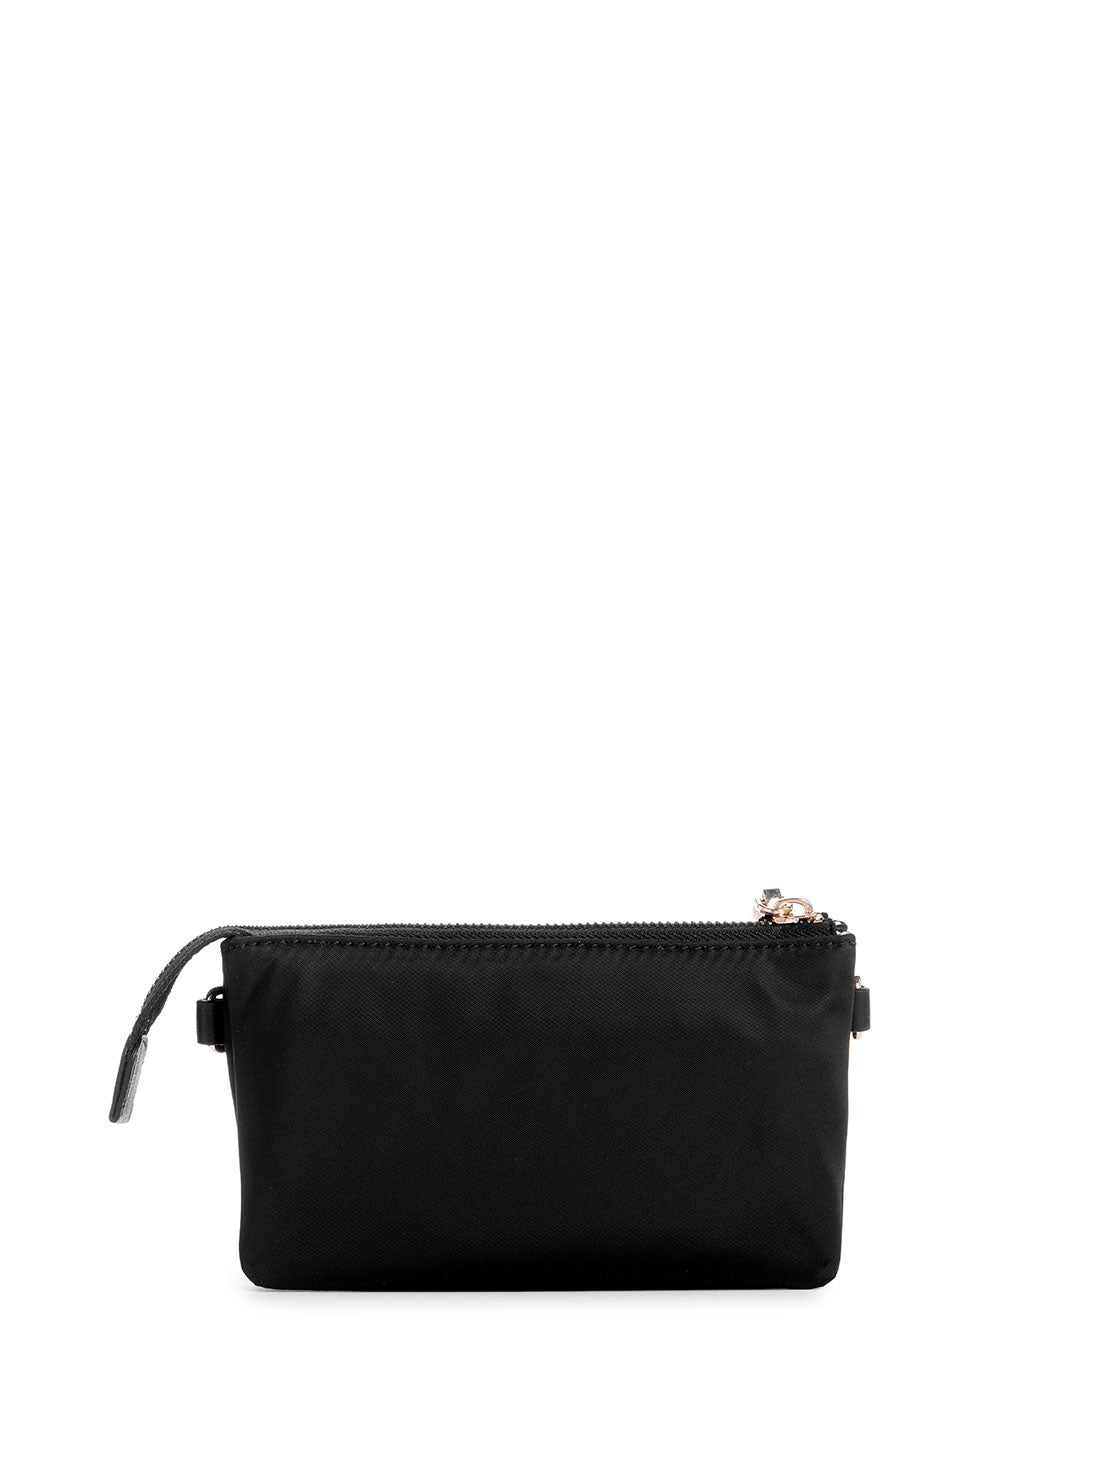 GUESS Black Latona Mini Top Zip Bag back view